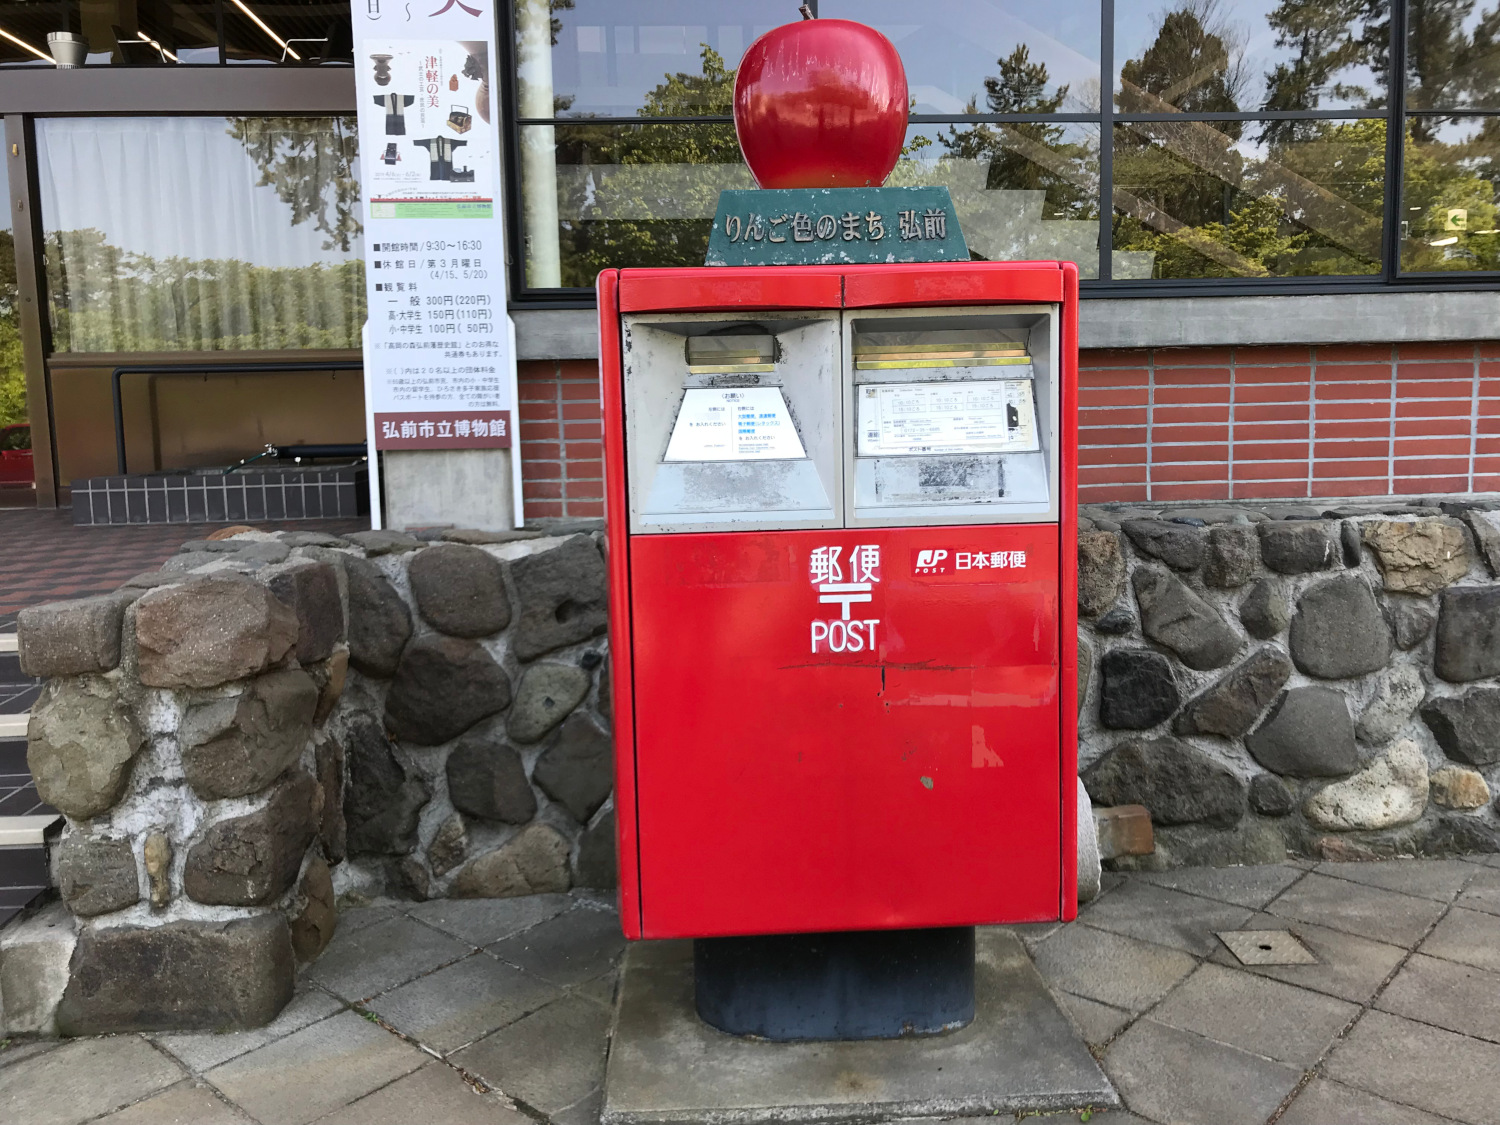 弘前の郵便ポスト